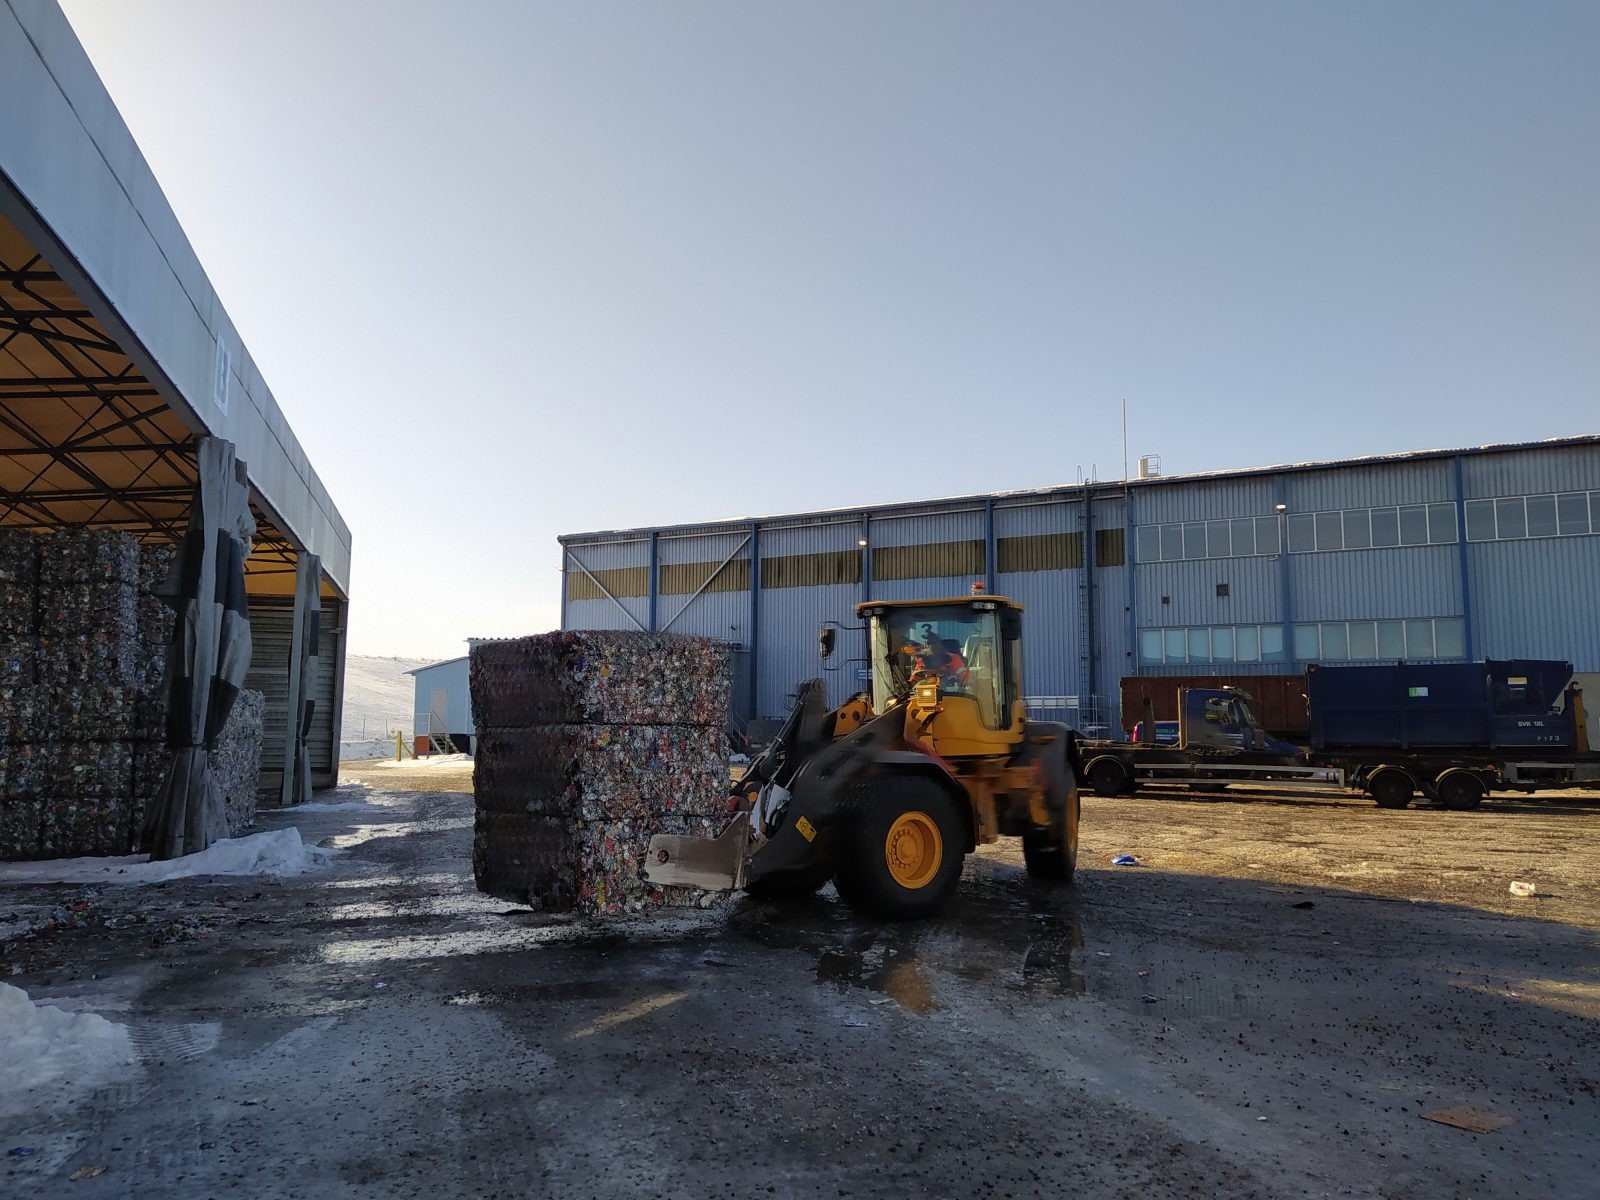 2400 kg metalu jako surowca wtórnego podczas wywozu z centrum logistycznego / autor: Jakub Zygmunt
